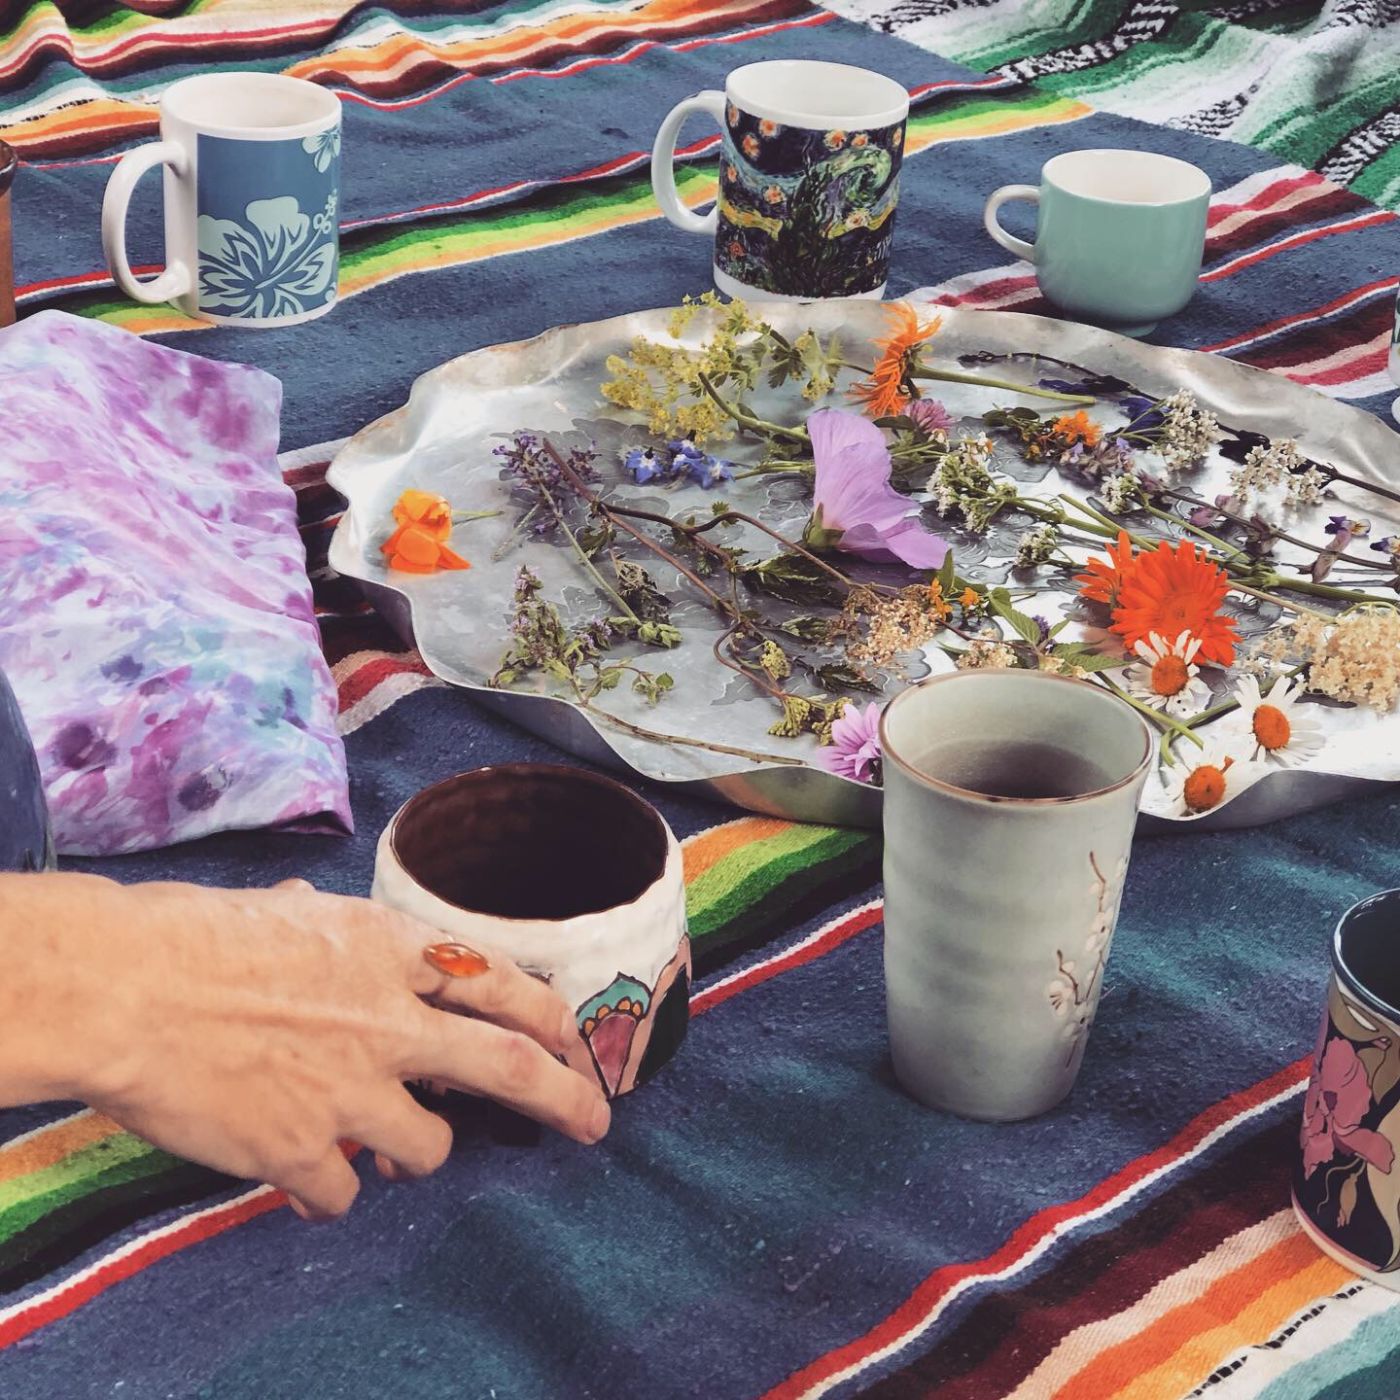 A woman's hand touches a mug near a tray of herbs.